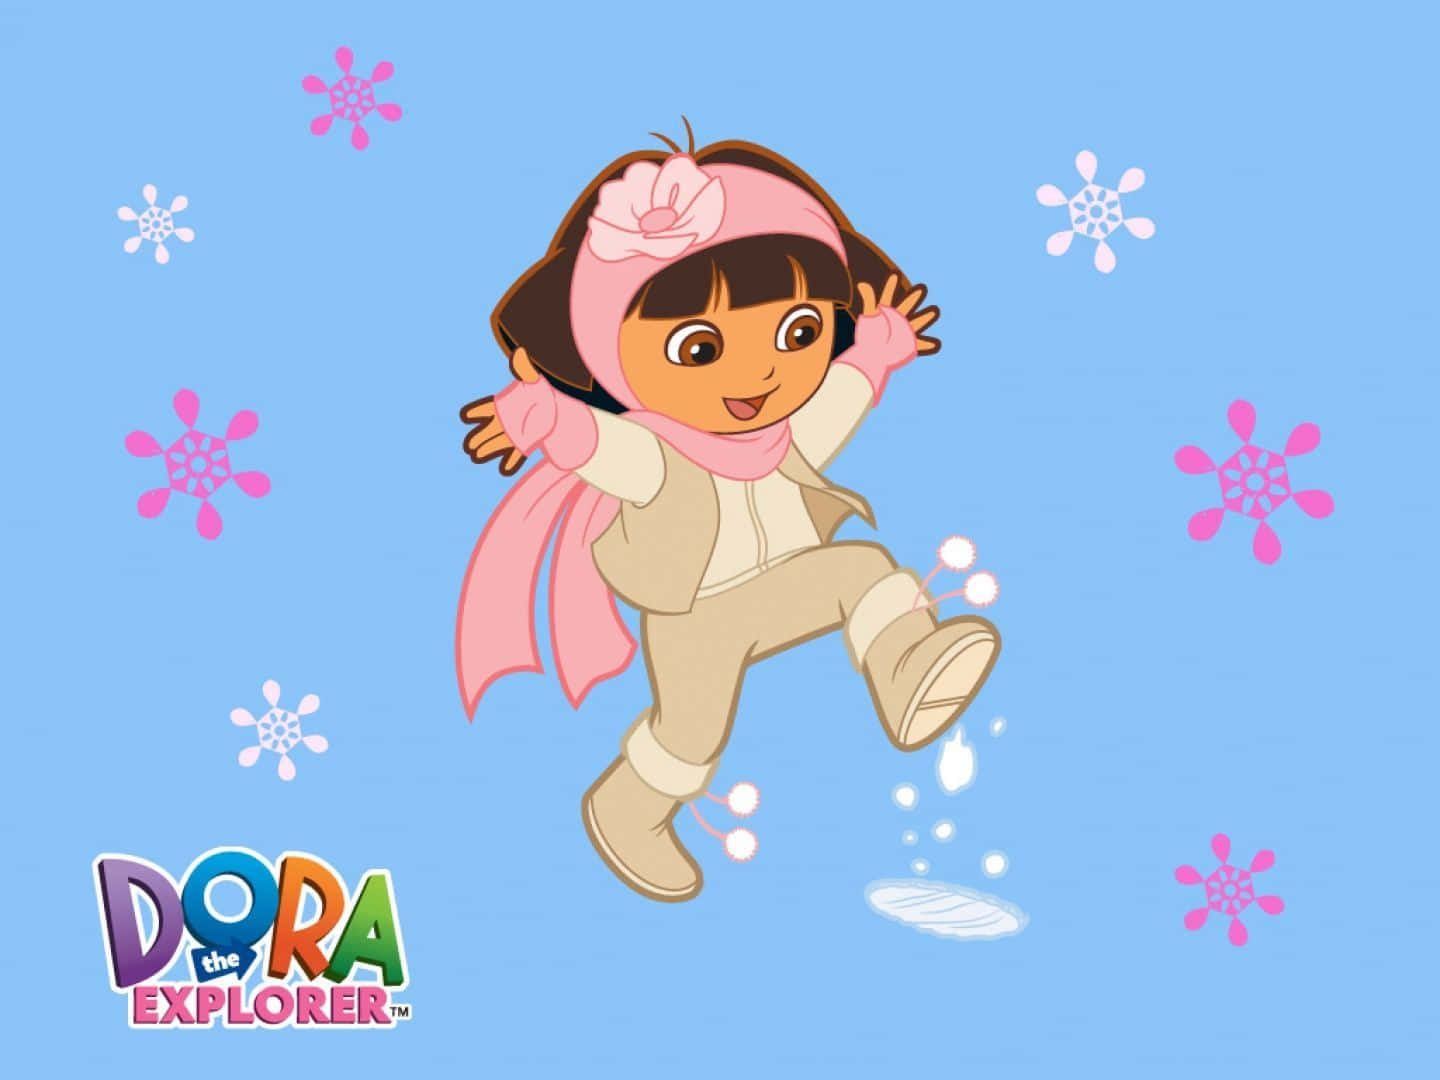 Följmed Dora På Hennes Äventyr I Den Magiska Världen!